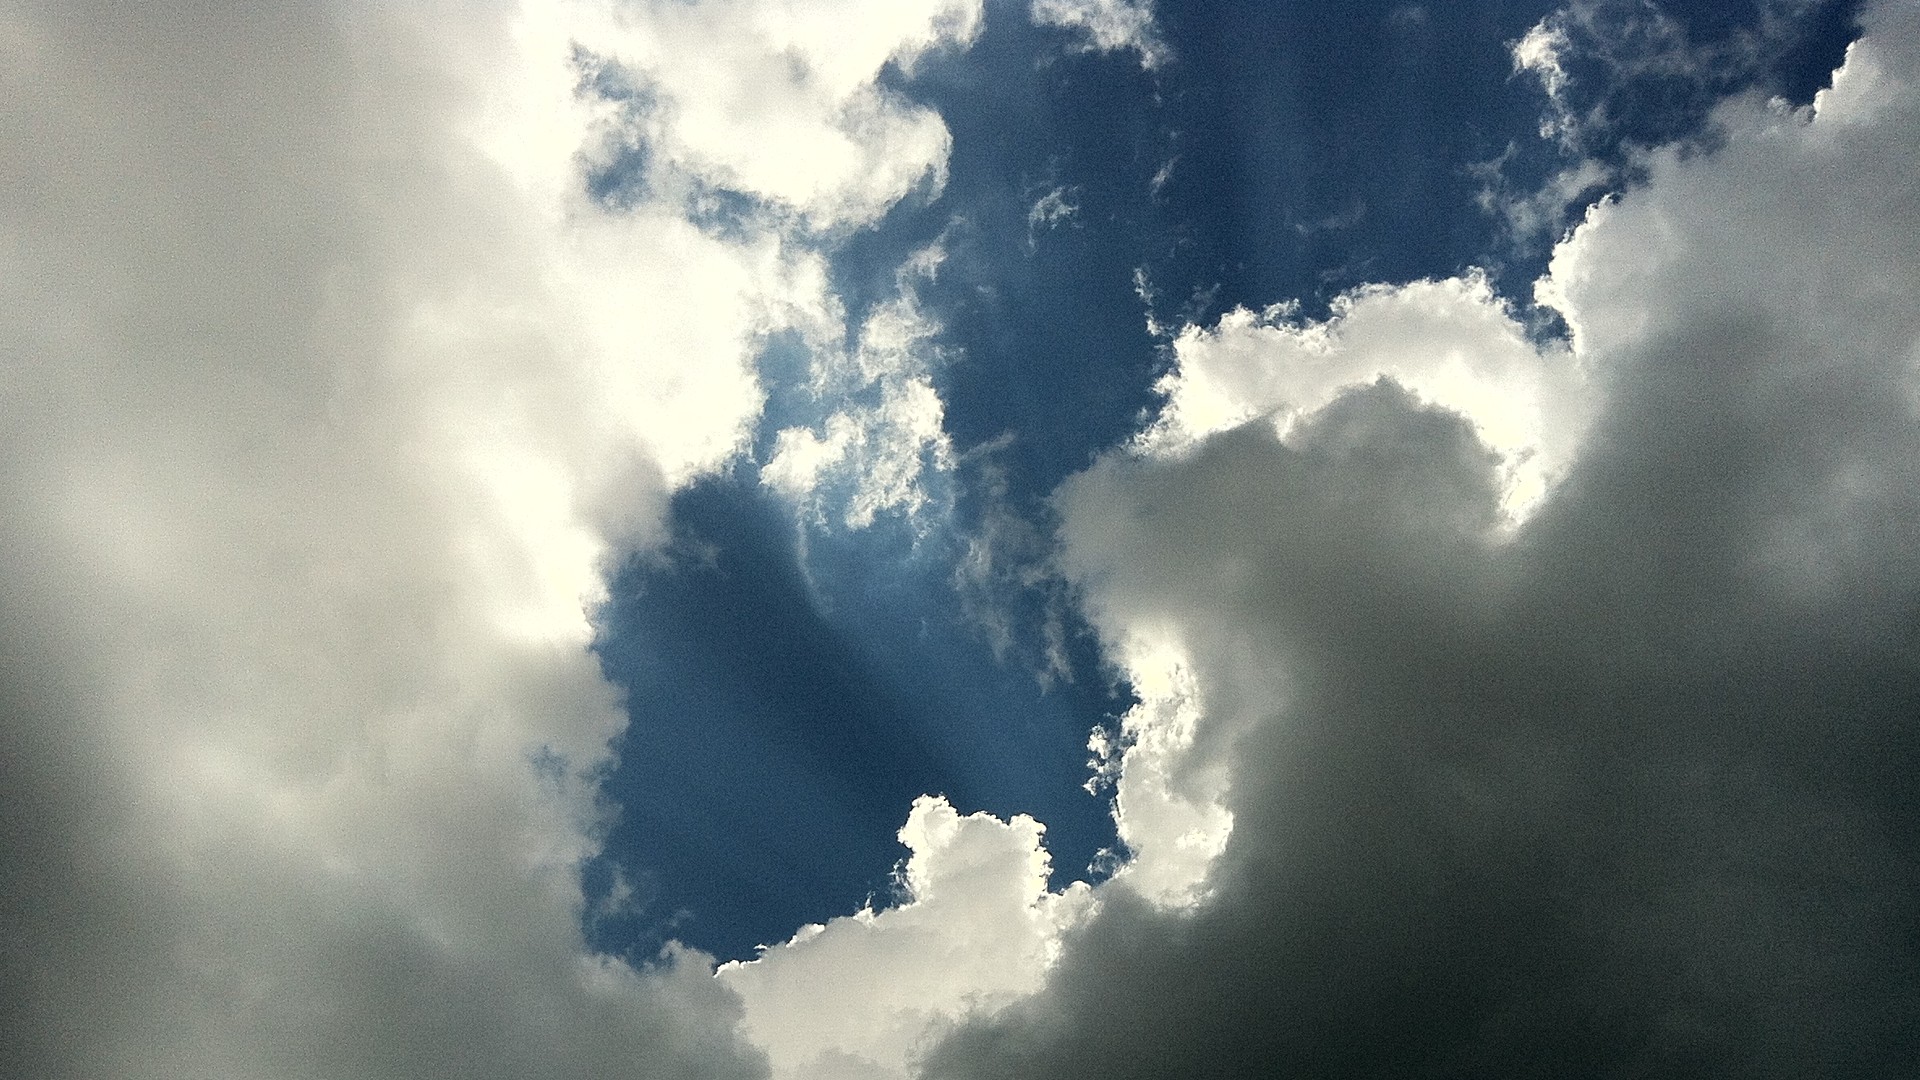 Обои пейзажи метеорологическое явление облака на рабочий стол